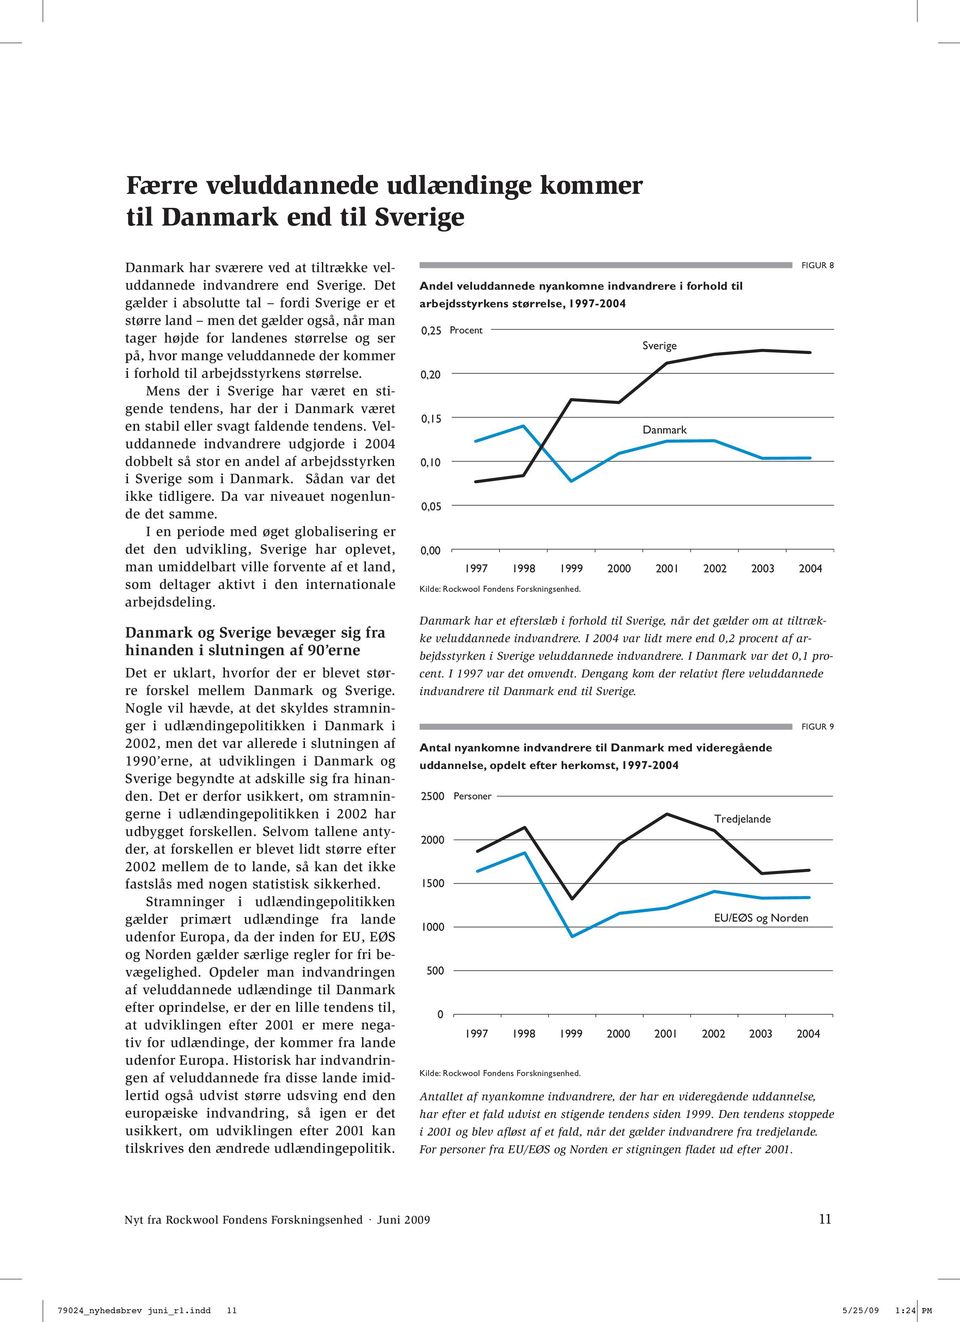 størrelse. Mens der i Sverige har været en stigende tendens, har der i Danmark været en stabil eller svagt faldende tendens.